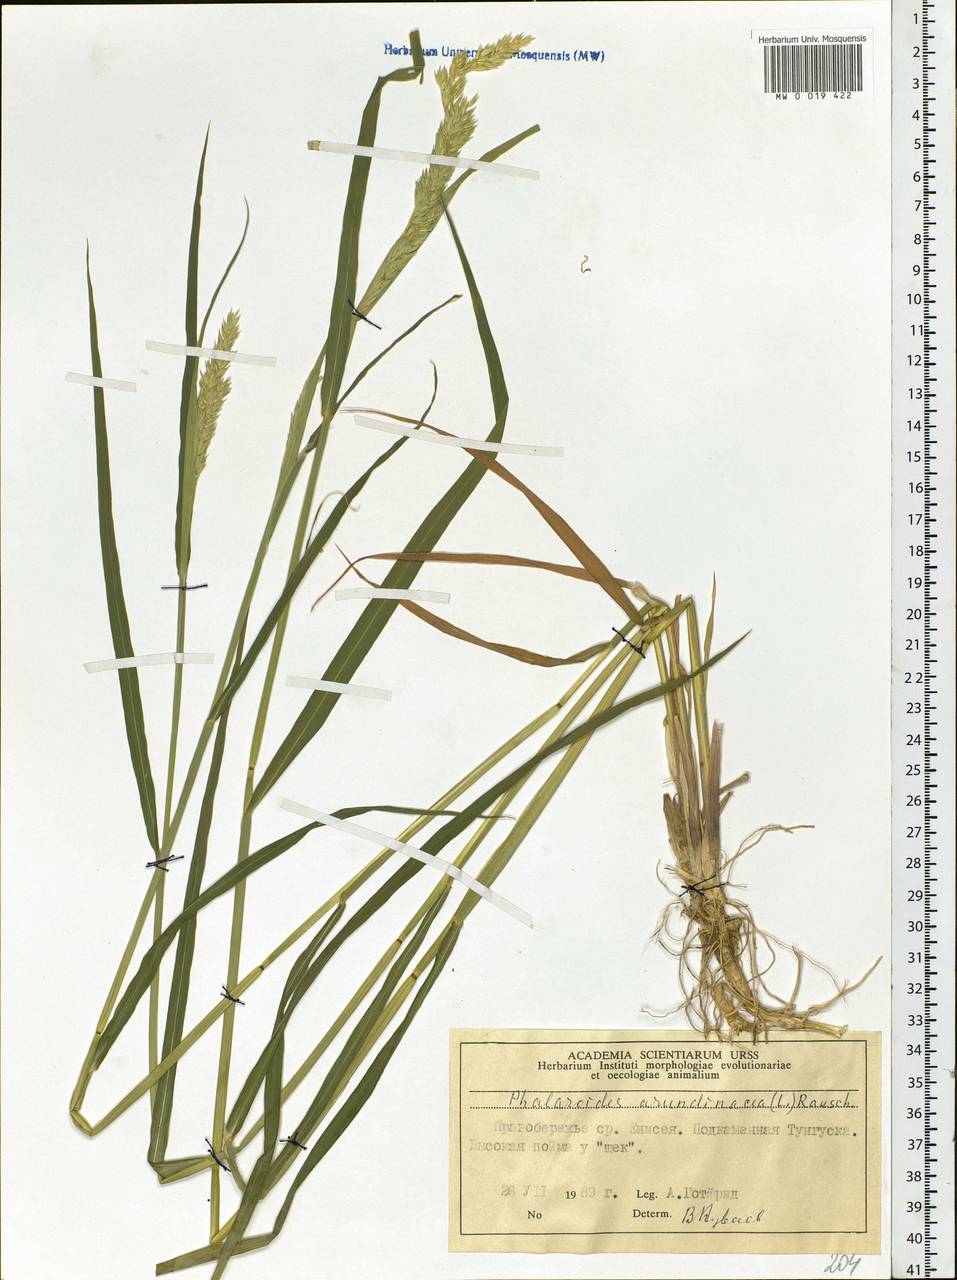 Phalaris arundinacea L., Siberia, Central Siberia (S3) (Russia)